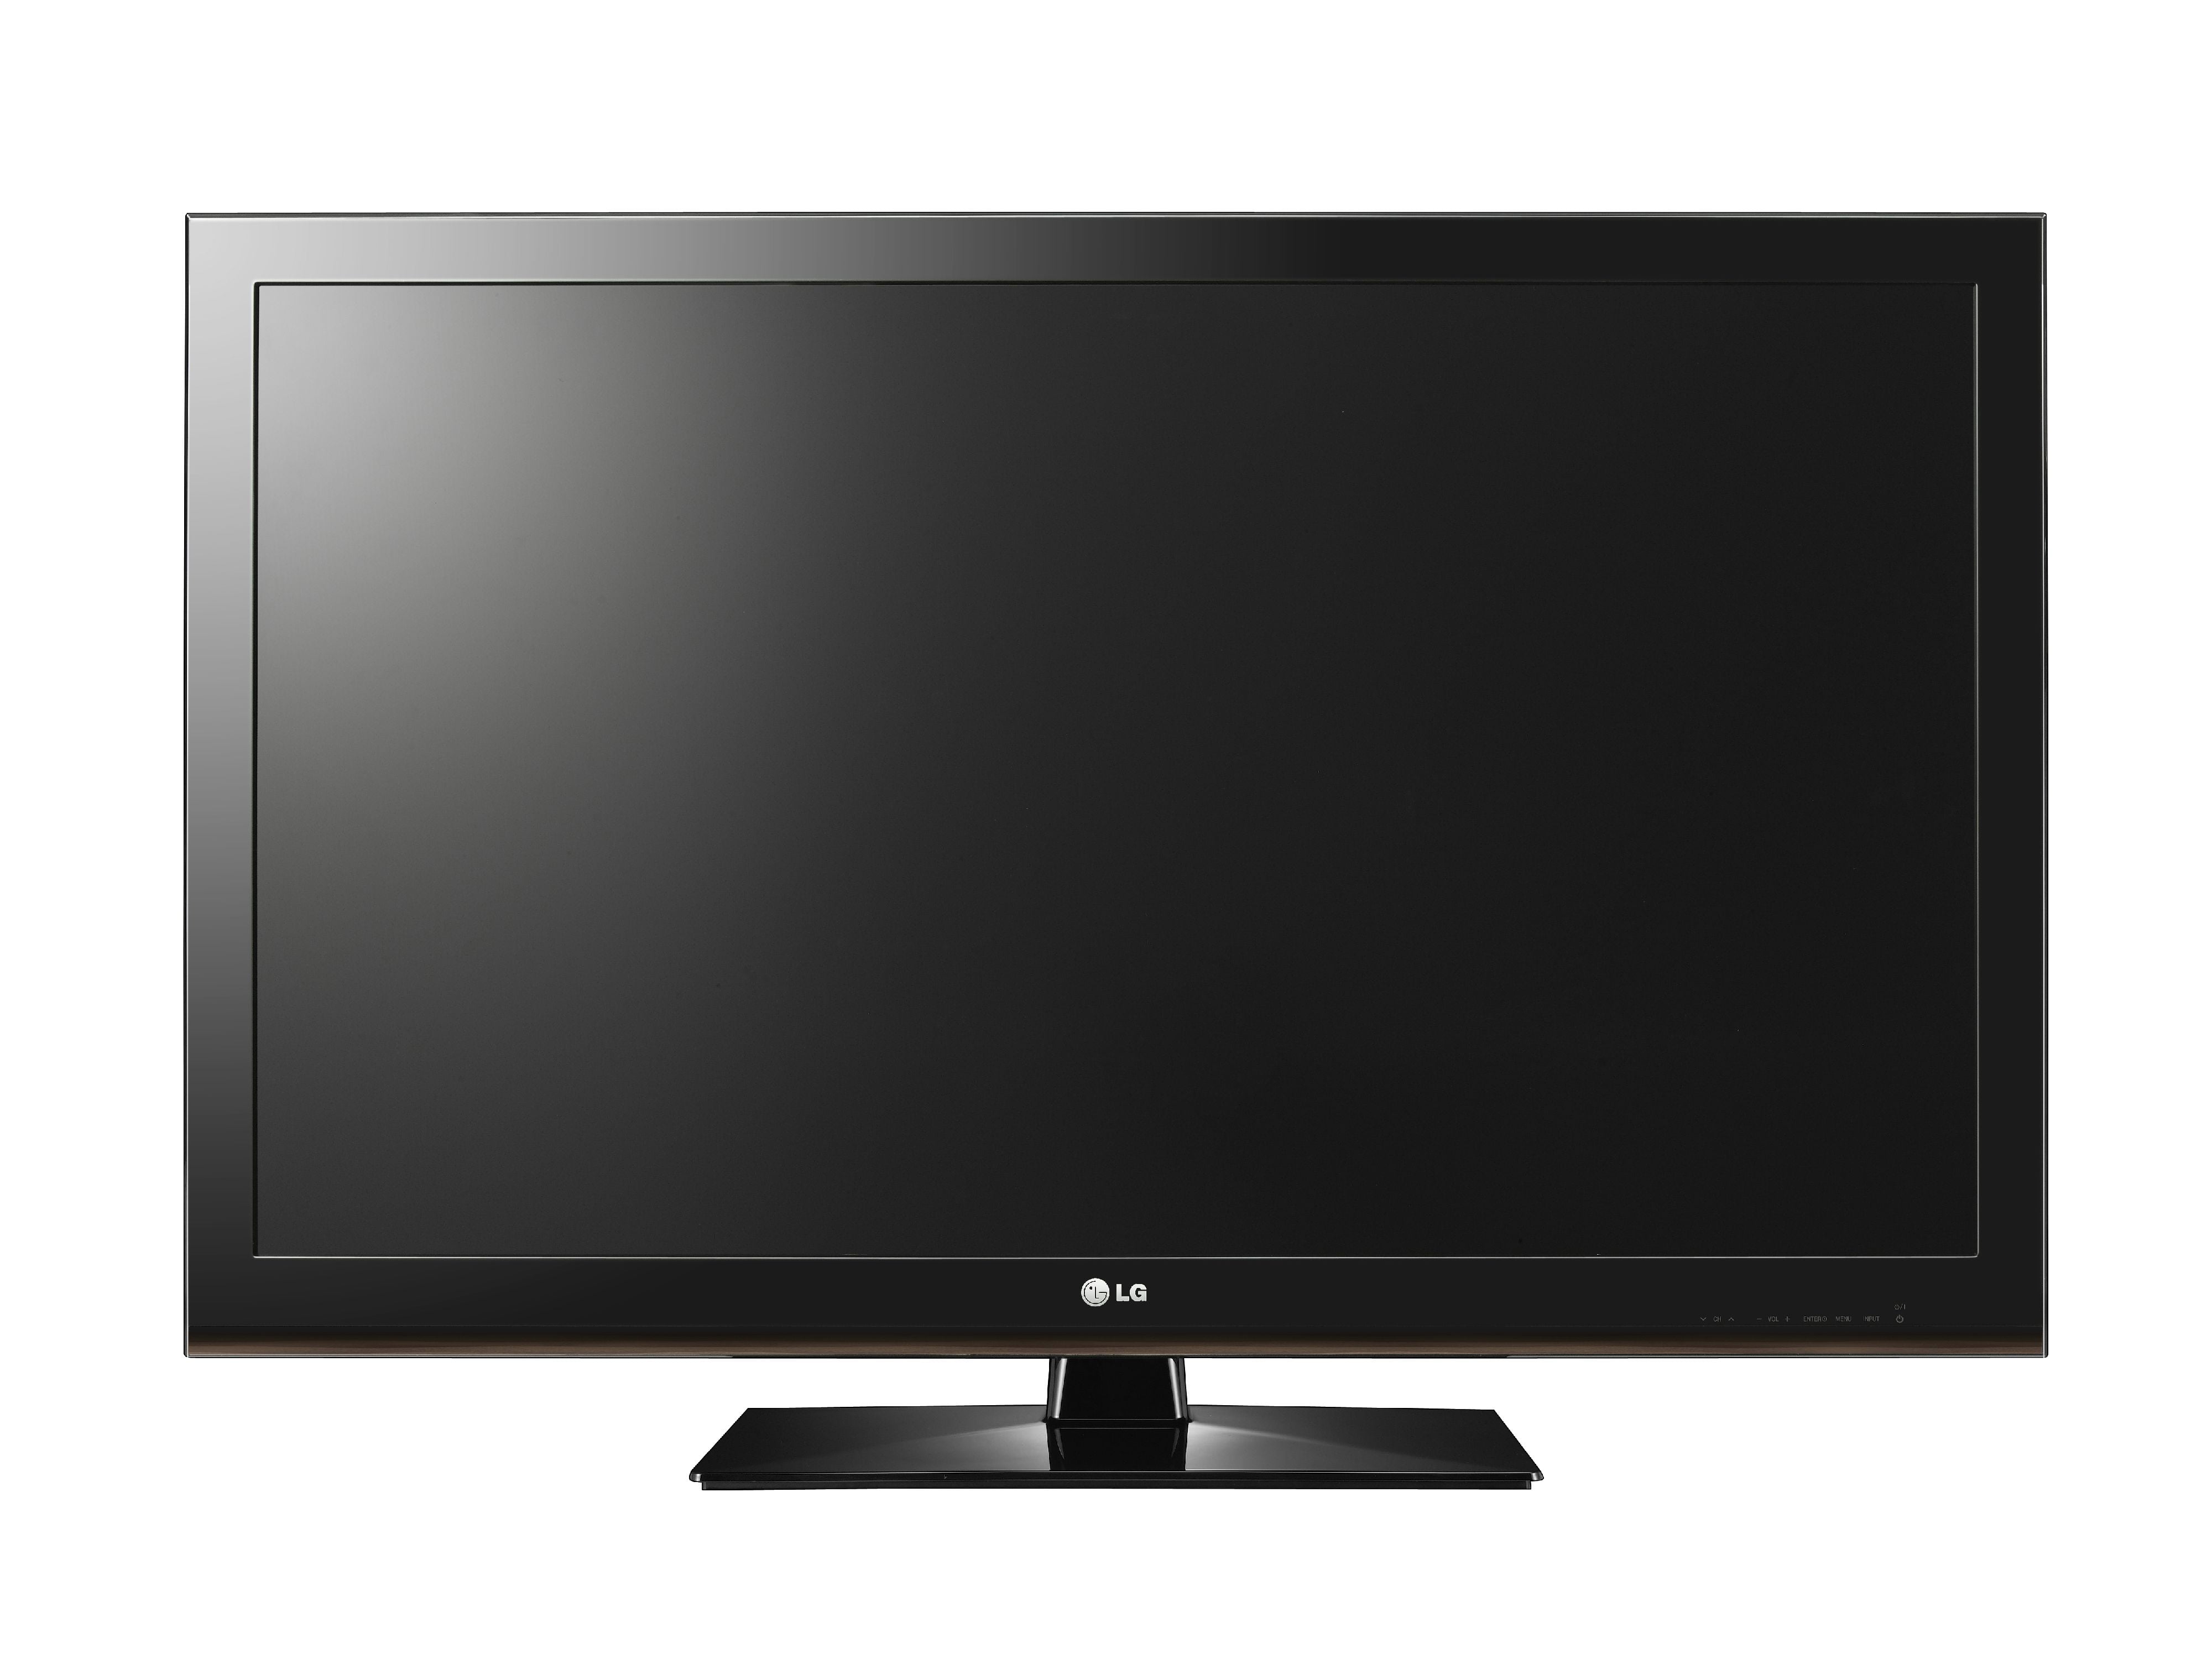 Class LCD 1080p 60Hz 3D HDTV, (3.0" ultra-slim) 47CM565 - Walmart.com